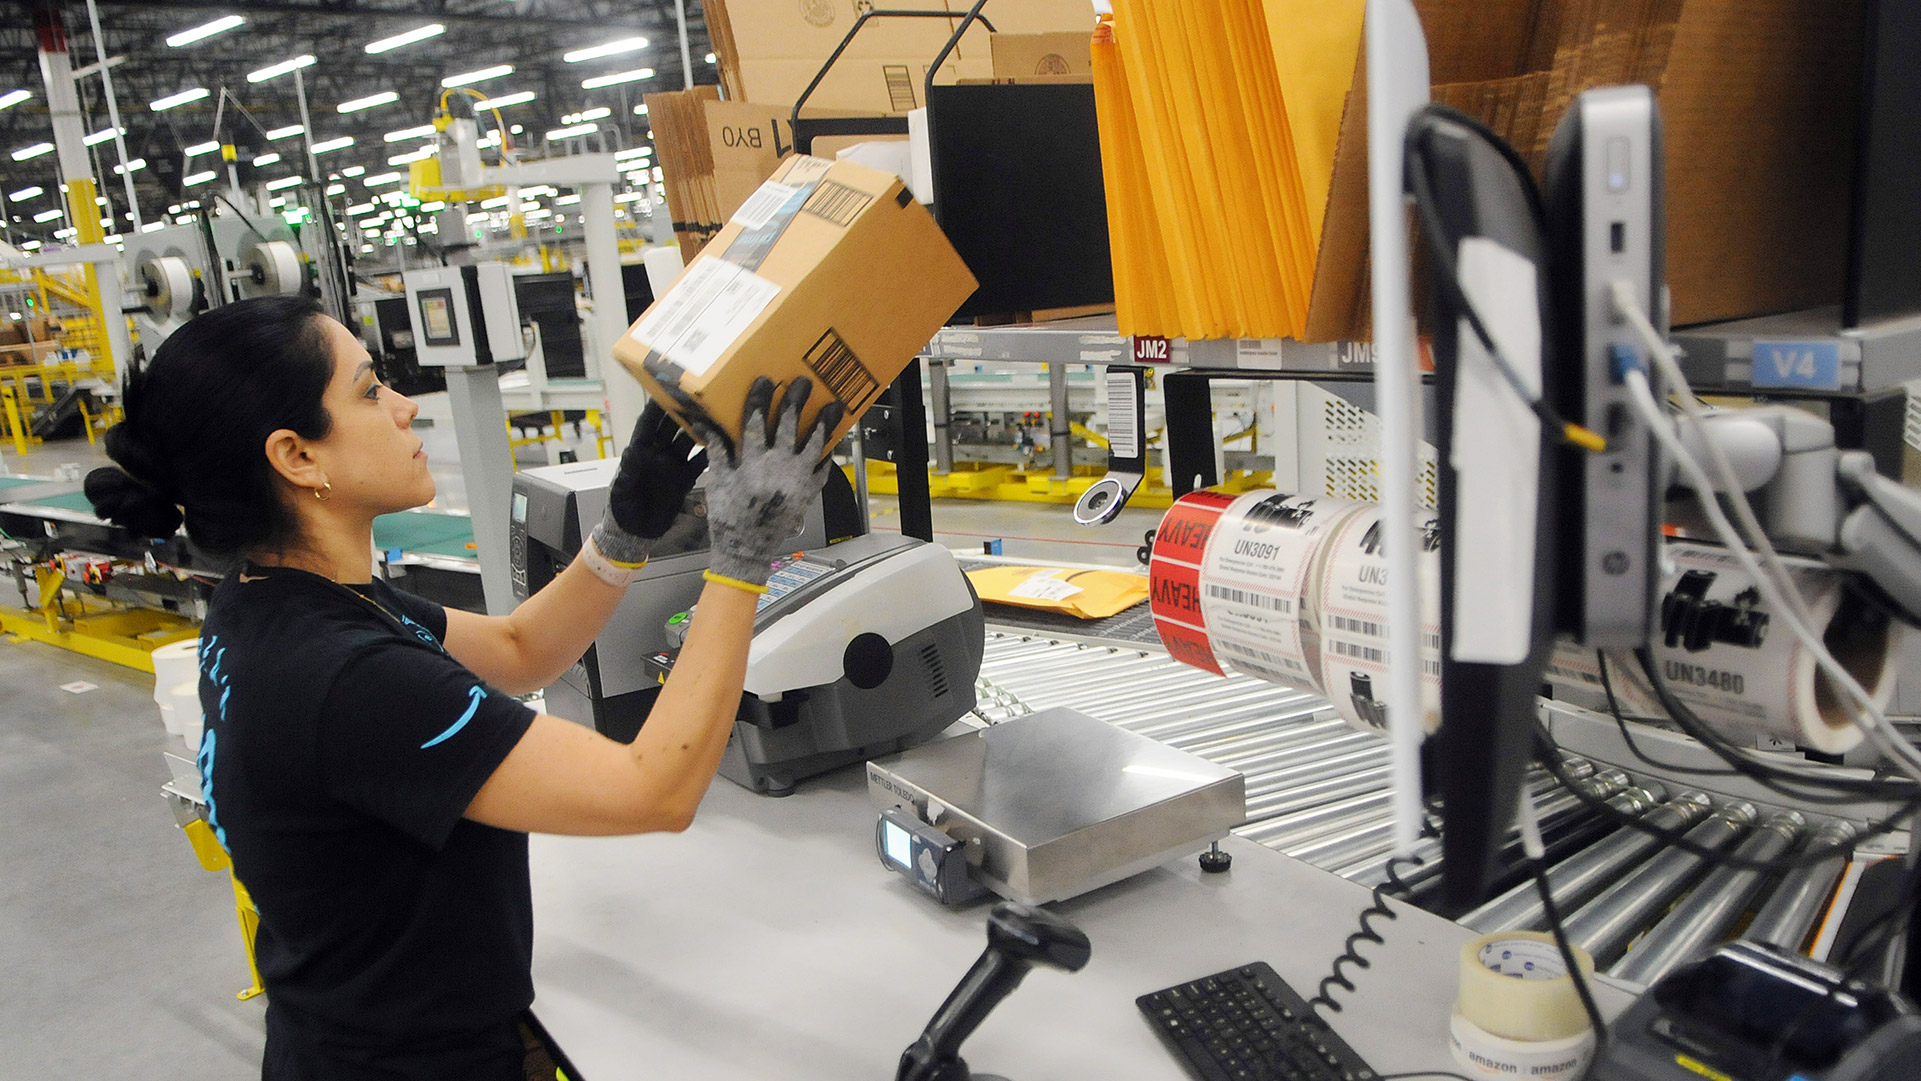 Braccialetto elettronico e automazione: l’inutile polemica contro Amazon